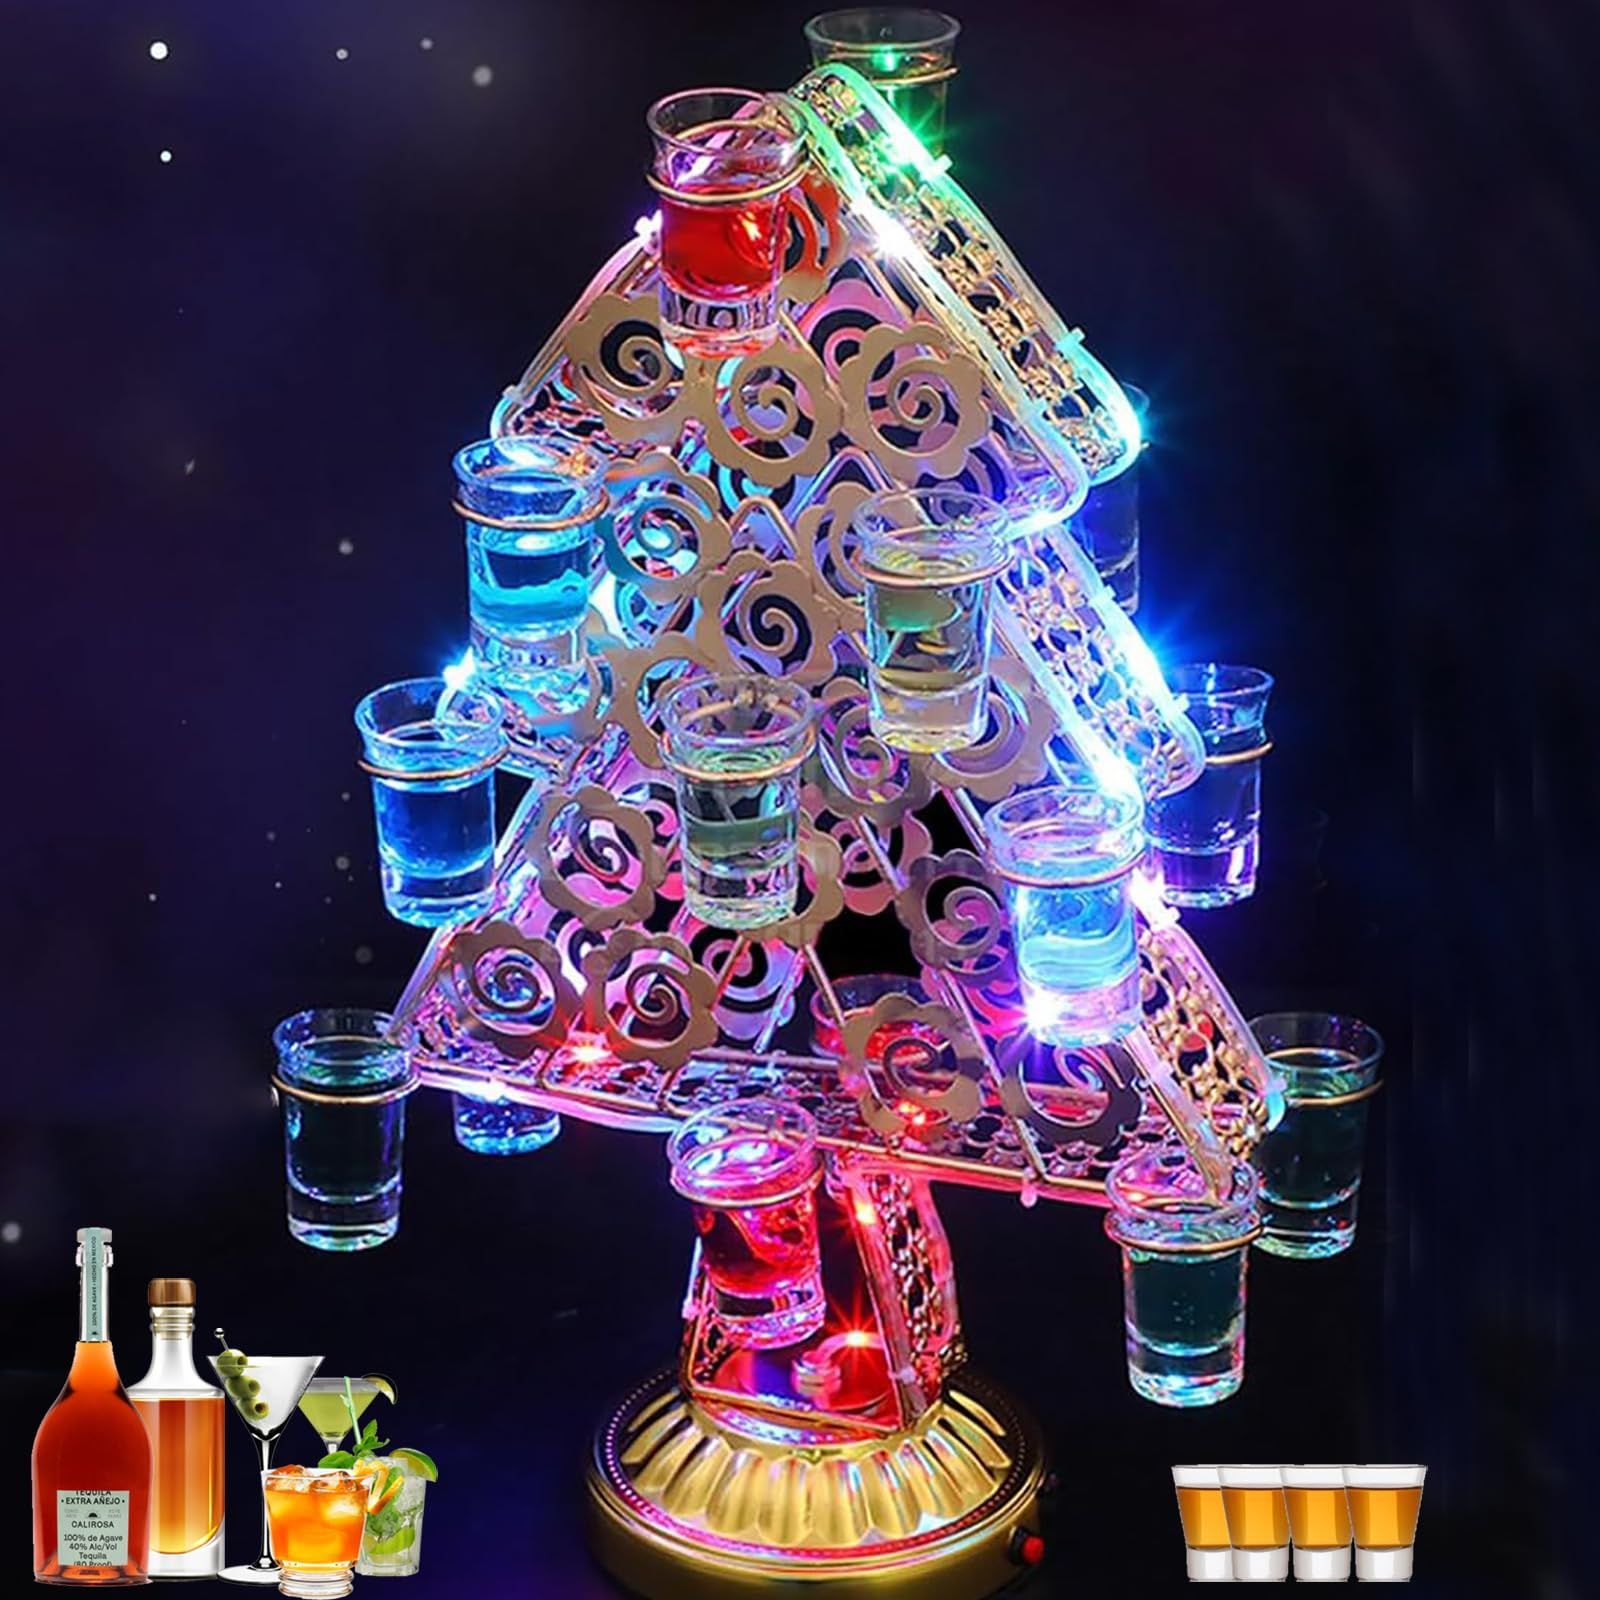 テキーラ クリスマスツリー led酒ボトルの表示棚 カクテルグラスホルダー 18カップ ワインラック ワインホルダー クリスマスツリーの形  led酒グラス 収納ラック充電式 ショットグラス カクテルグラス ボムグラス収納 クリスマスツリー 酒棚 お - メルカリ